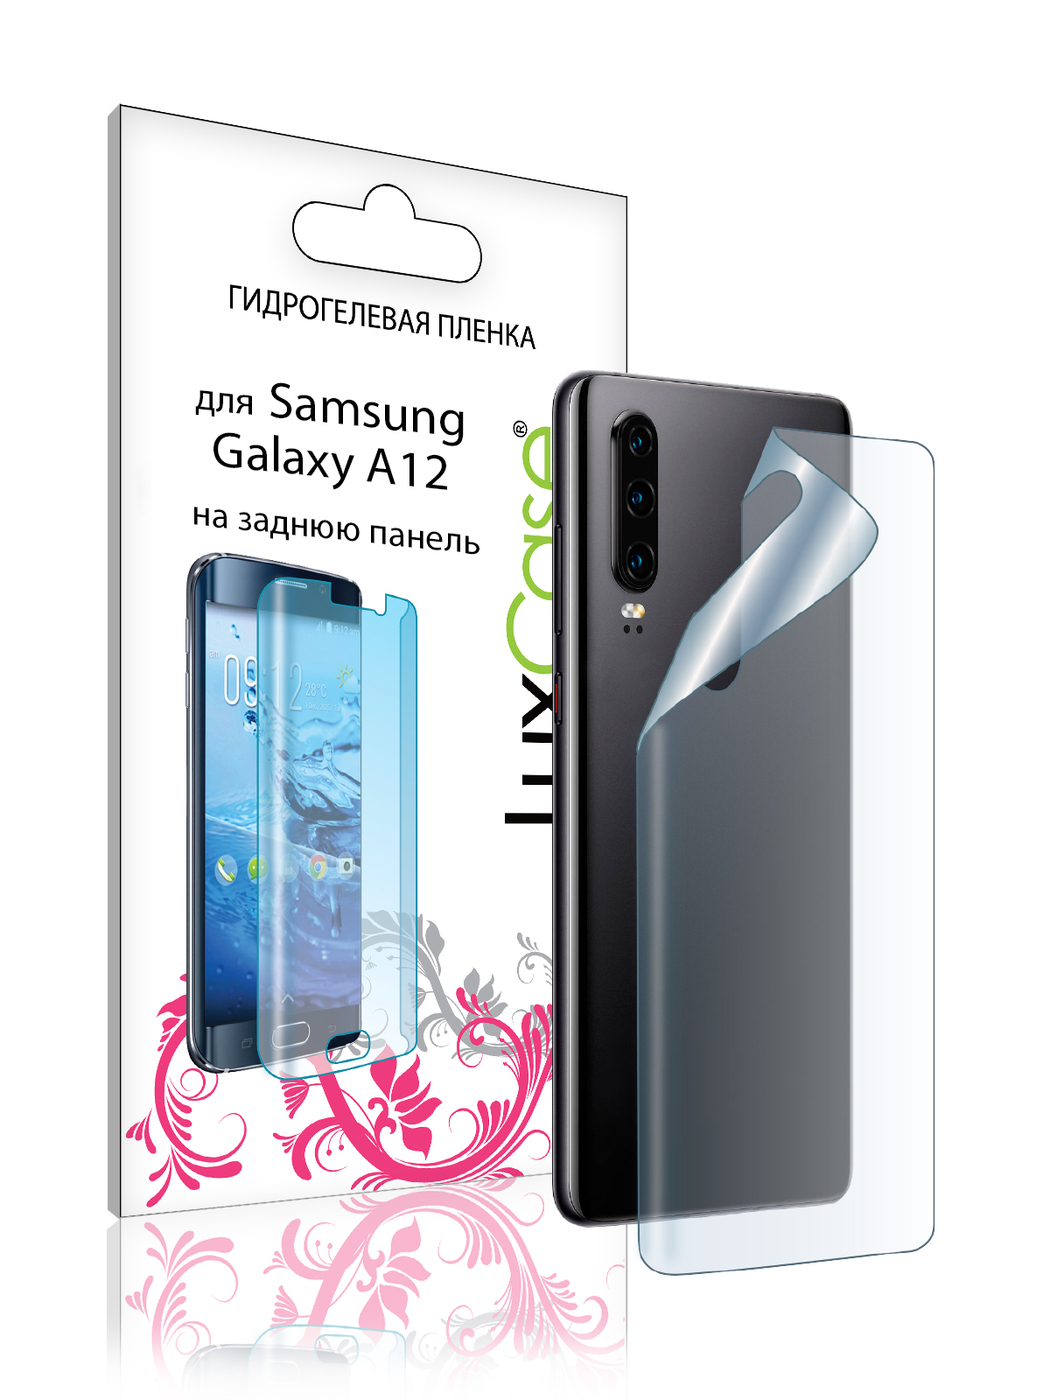 Пленка на заднюю панель LuxCase для Samsung Galaxy A12 0.14mm Transparent 86187 пленка на заднюю панель luxcase для samsung galaxy a12 0 14mm transparent 86187